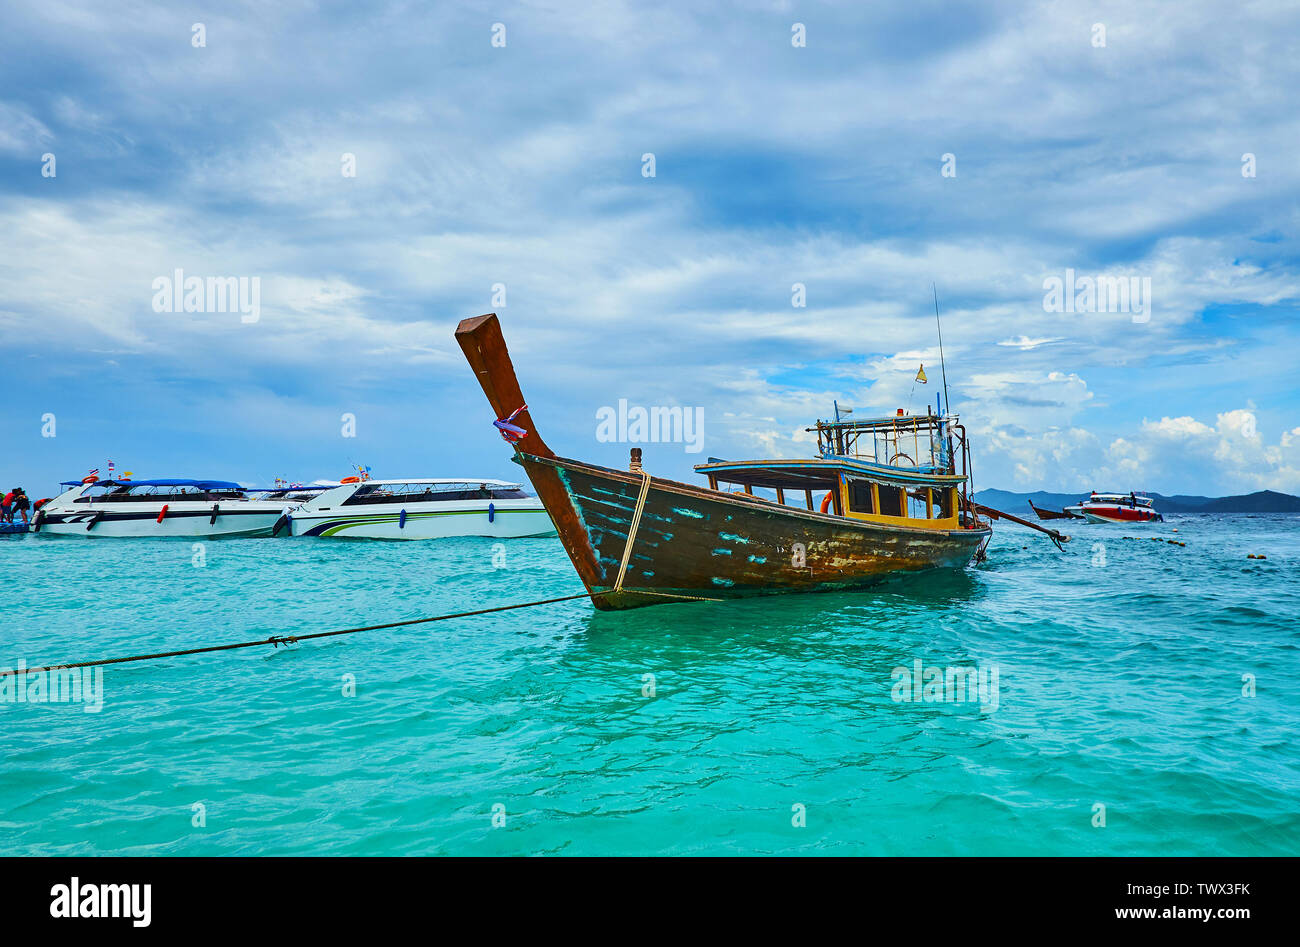 Le bateau longtail, dansant sur les eaux émeraude de la mer d'Andaman au bord du Khai Nok, Phuket, Thailand Banque D'Images